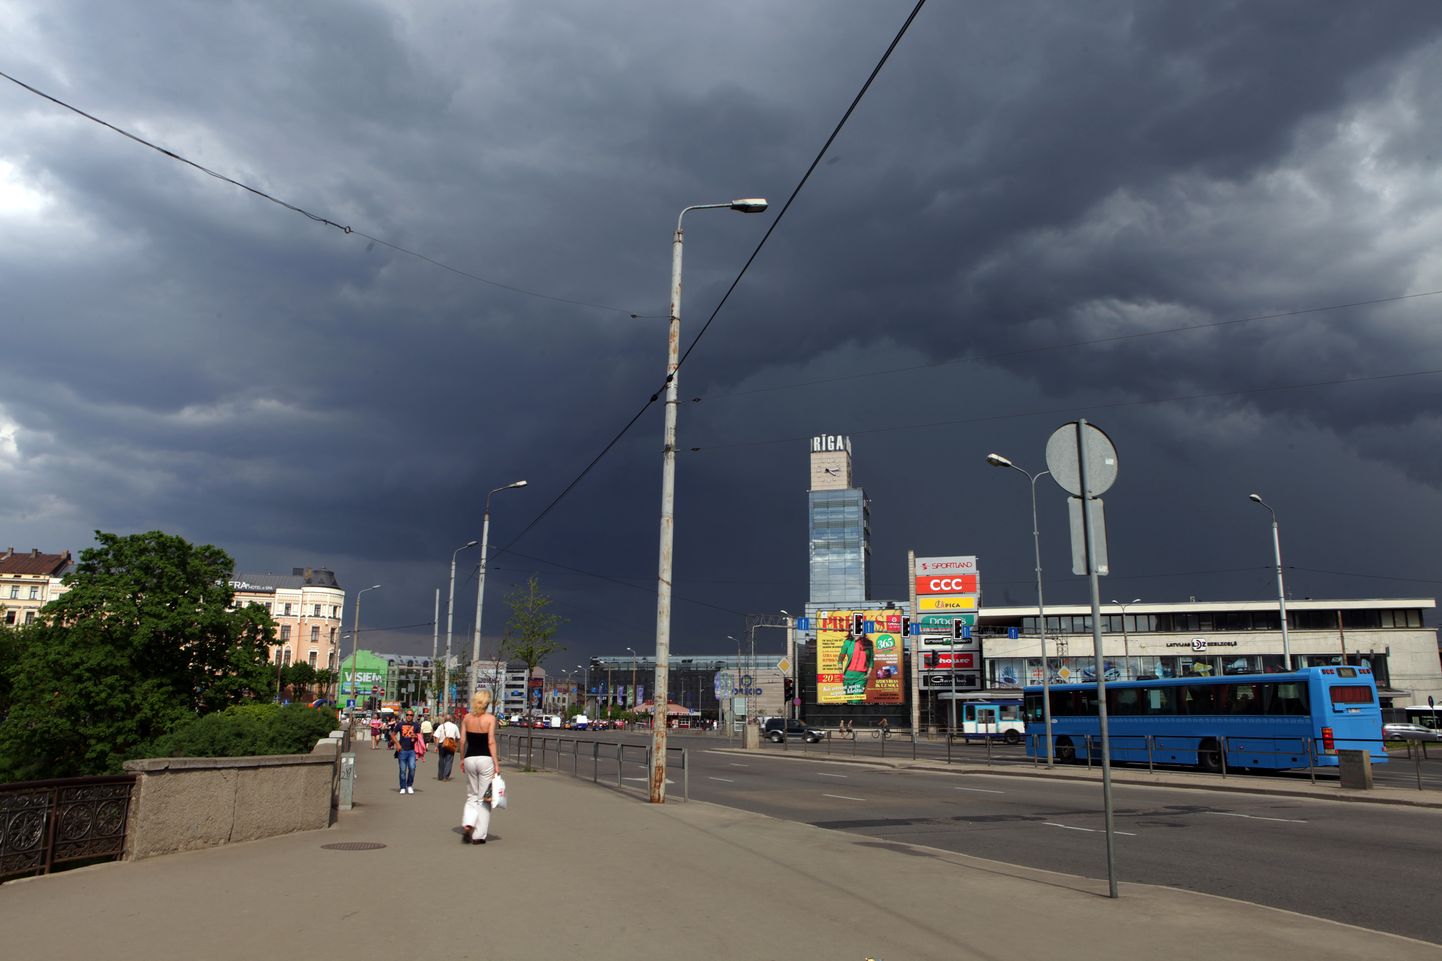 Rīgas centrs pirms negaisa.